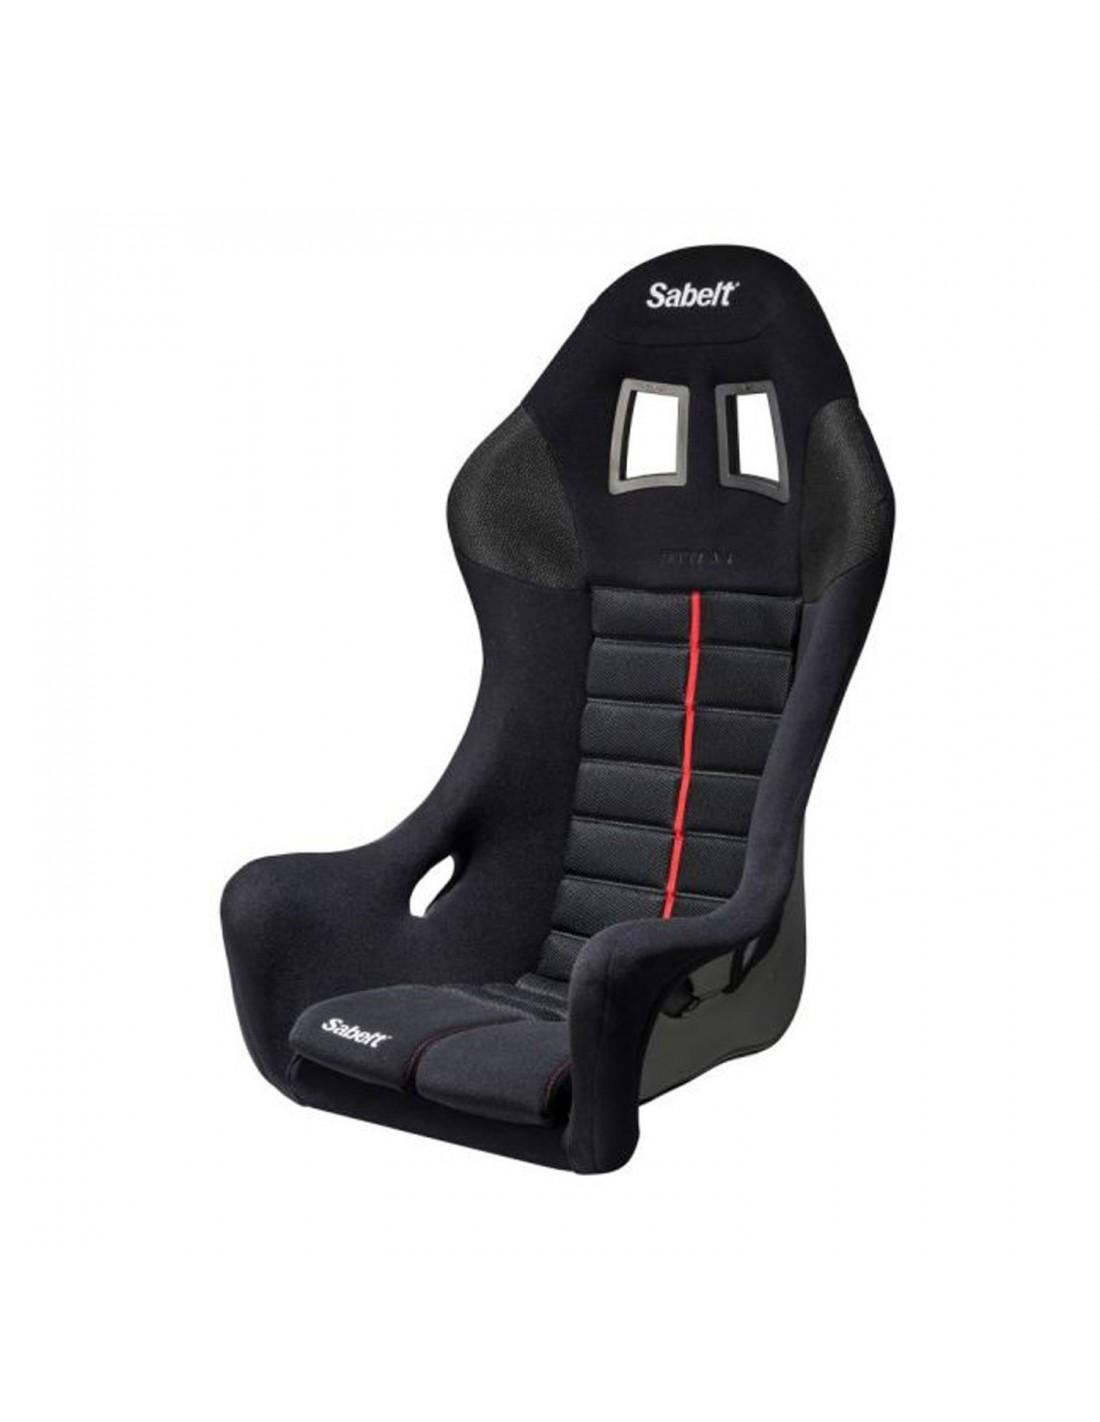 TITAN MAX Sport Seat - Sabelt